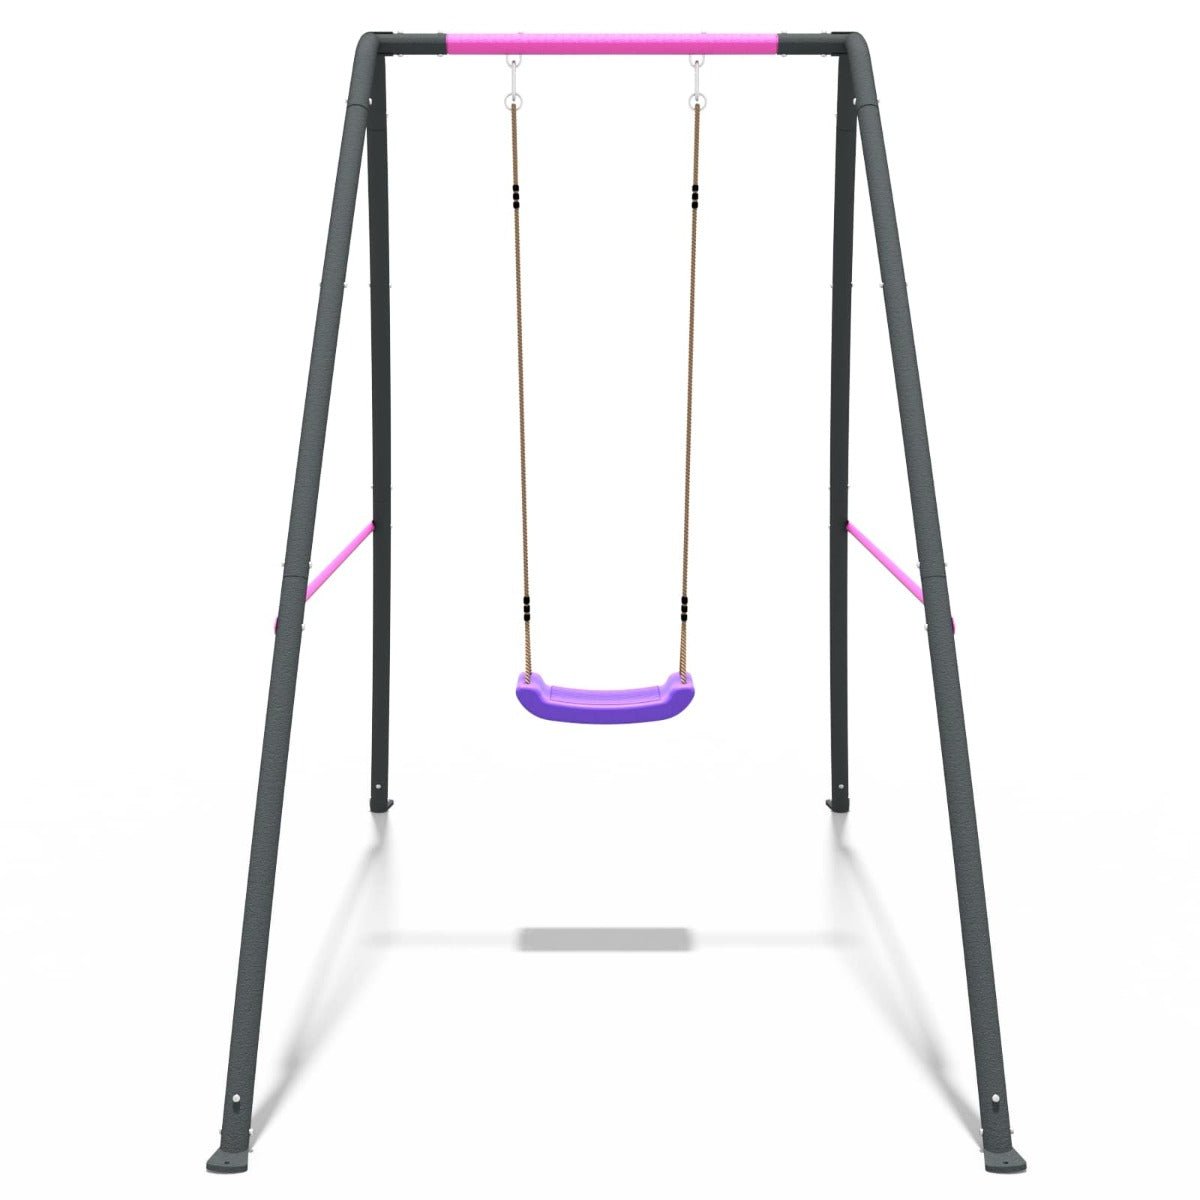 Rebo Steel Series Metal Swing Set - Single Swing Pink